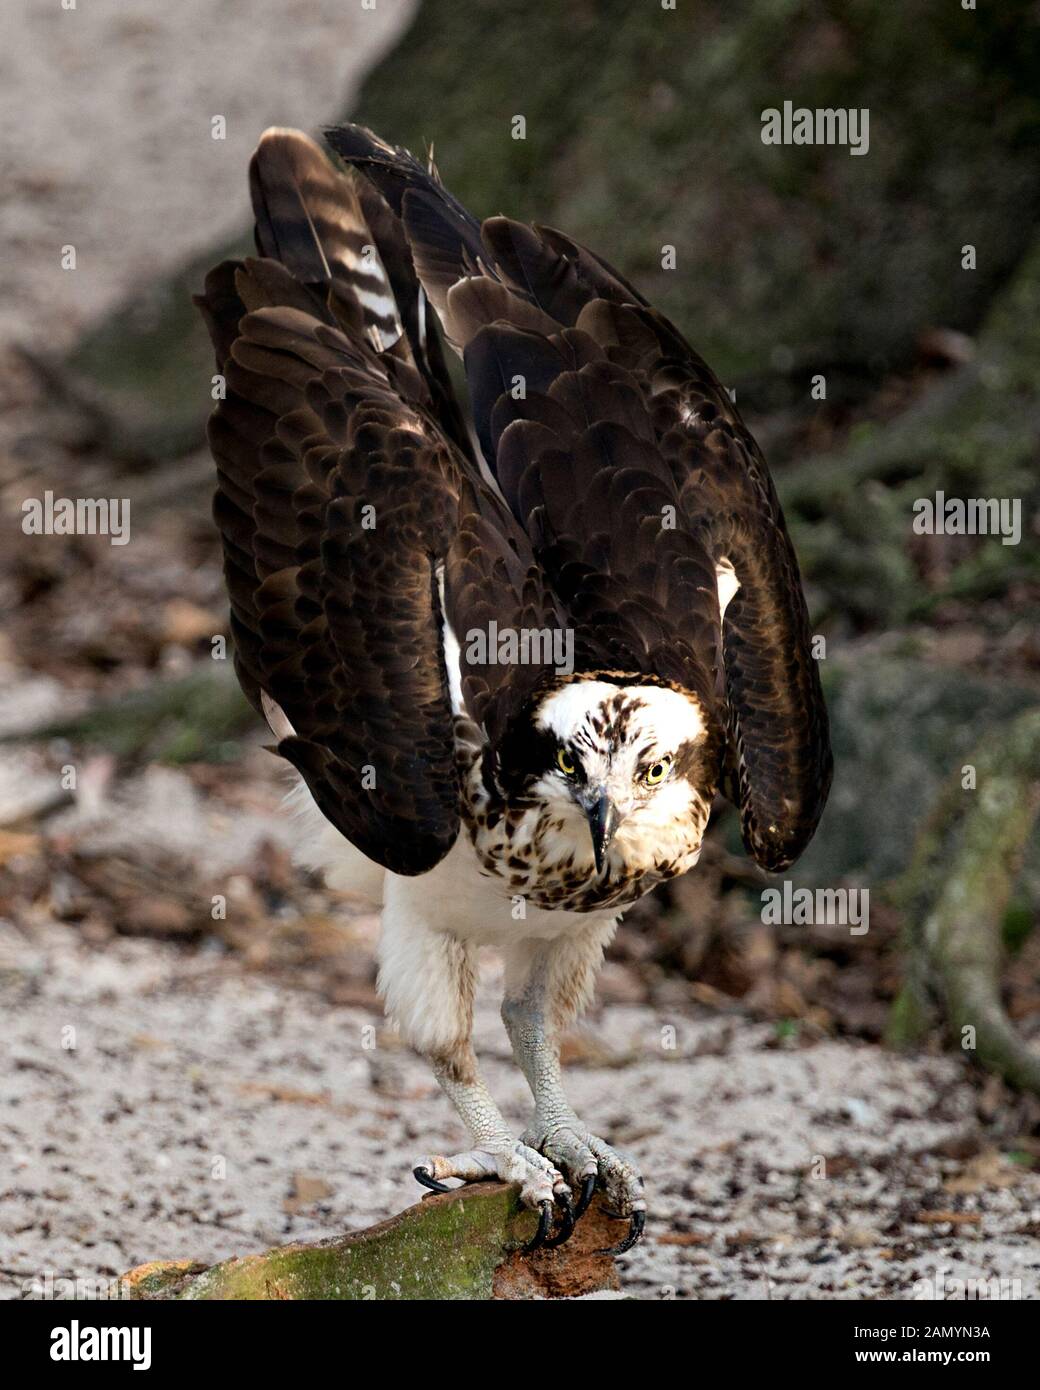 Osprey bird close-up vista di profilo con ali spiegate con un sfondo bokeh visualizzando le sue piume marrone piumaggio, occhio, becco, artigli nella sua environmen Foto Stock